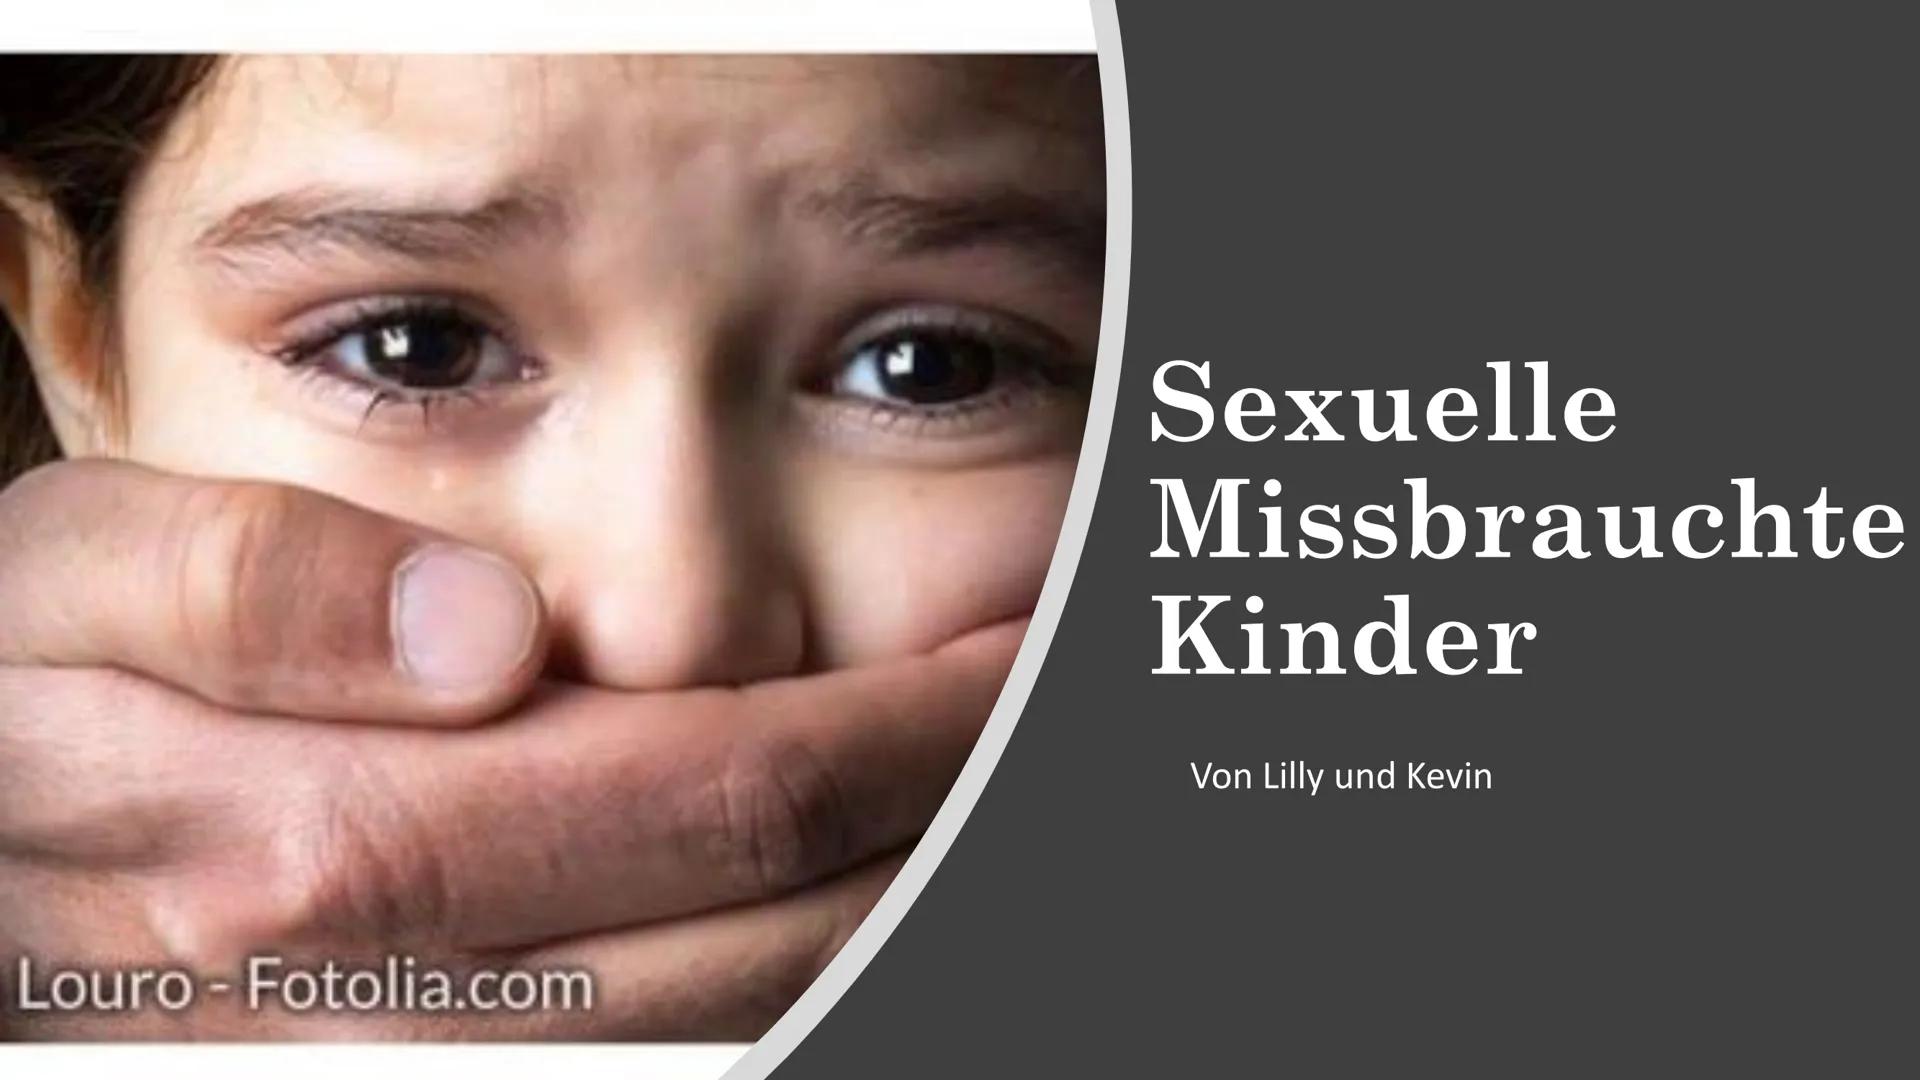 Louro - Fotolia.com
Sexuelle
Missbrauchte
Kinder
Von Lilly und Kevin CO
●
●
●
●
Gliederung
Was ist sexueller
Missbauch? Ab
wann spricht man
